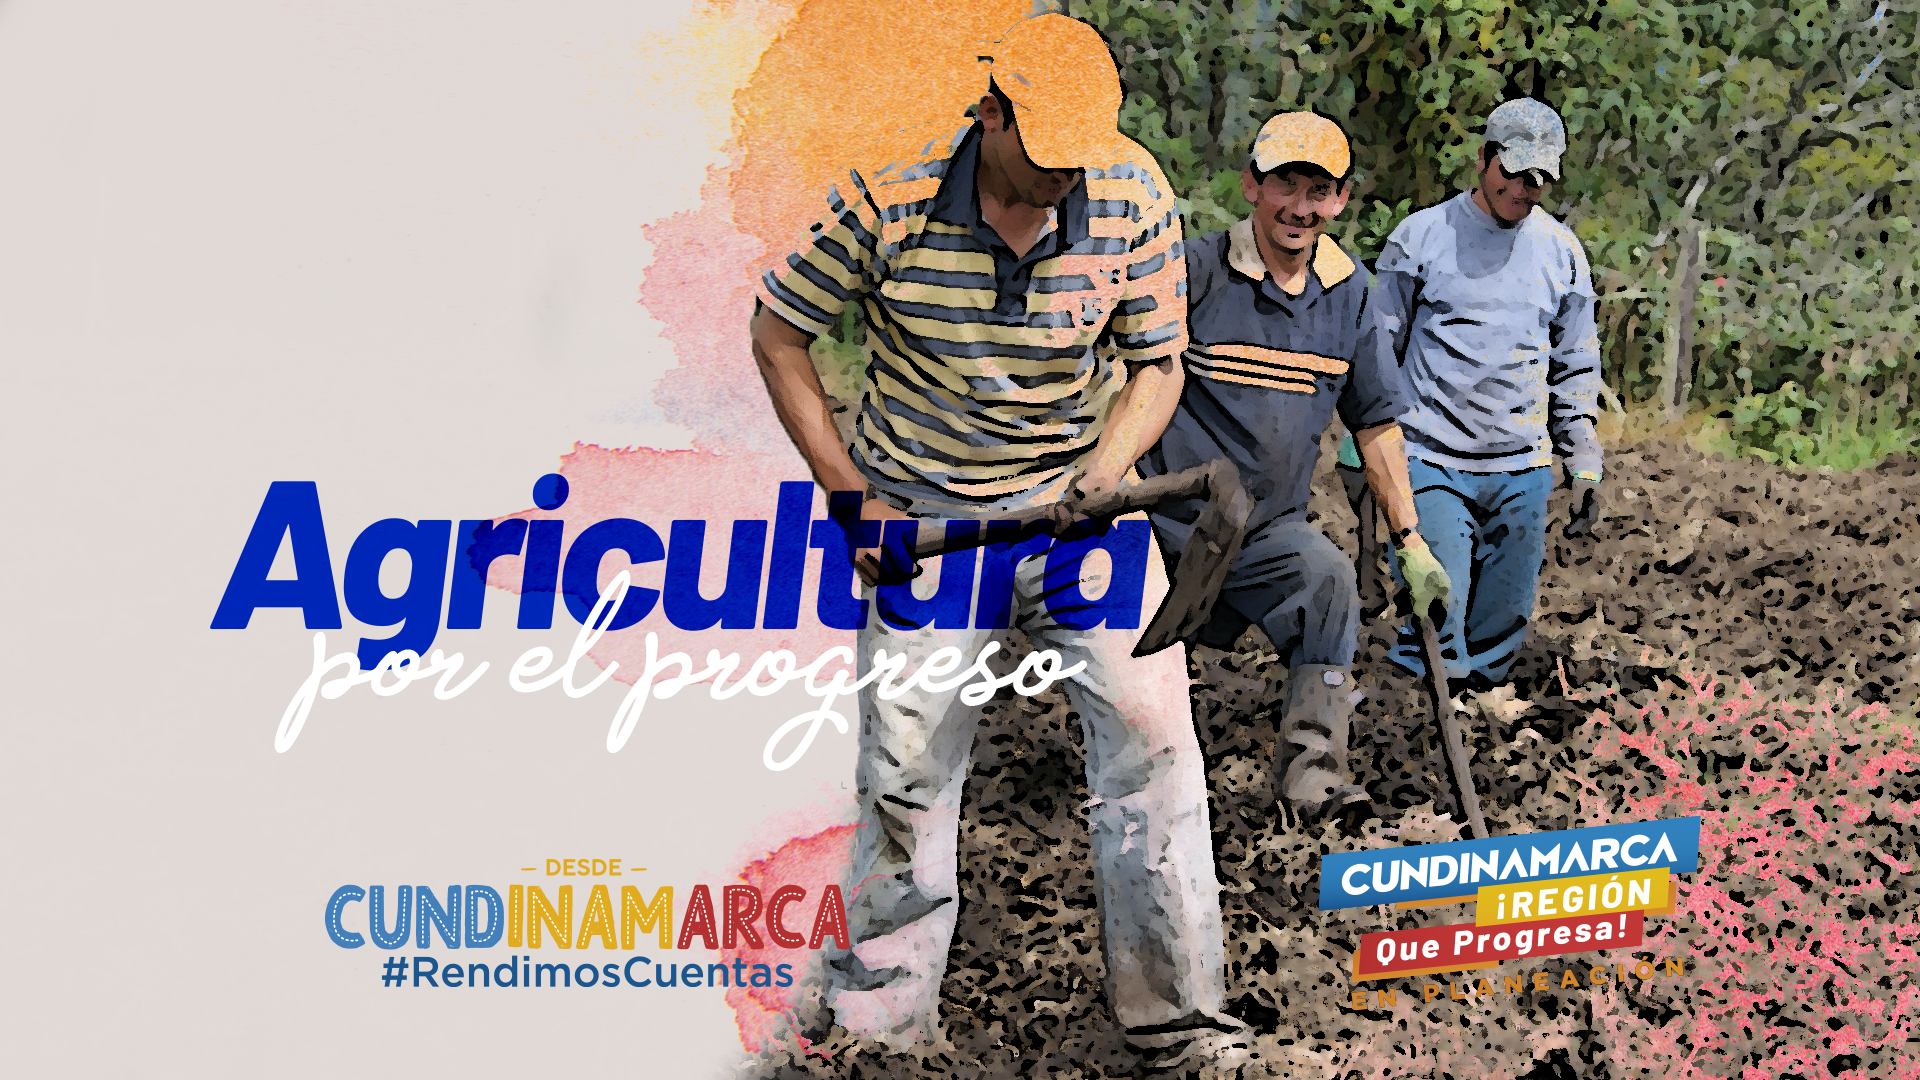 Imagen del video Desde #Cundinamarca #RendimosCuentas: Agricultura por el progreso